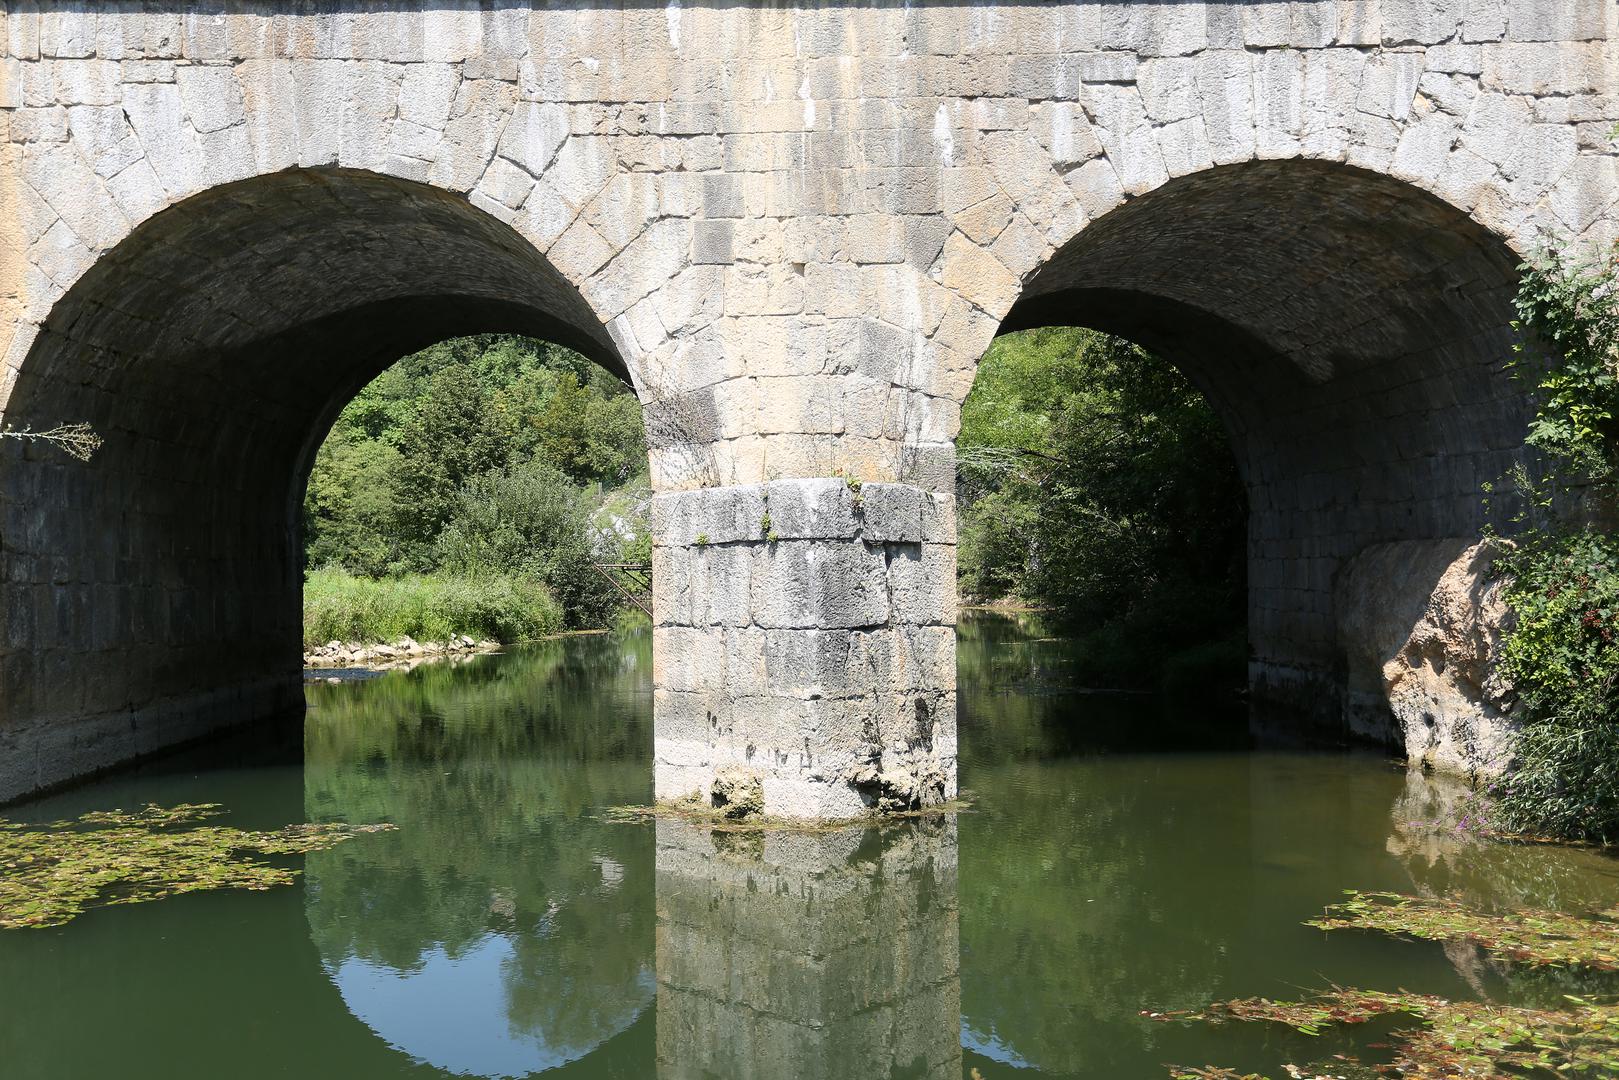 Prvi kat mosta izgrađen je 1775. godine za vrijeme početka gradnje Jozefine pod nadzorom graditelja i projektanta pukovnika Vincenza Giorgia Struppija. 